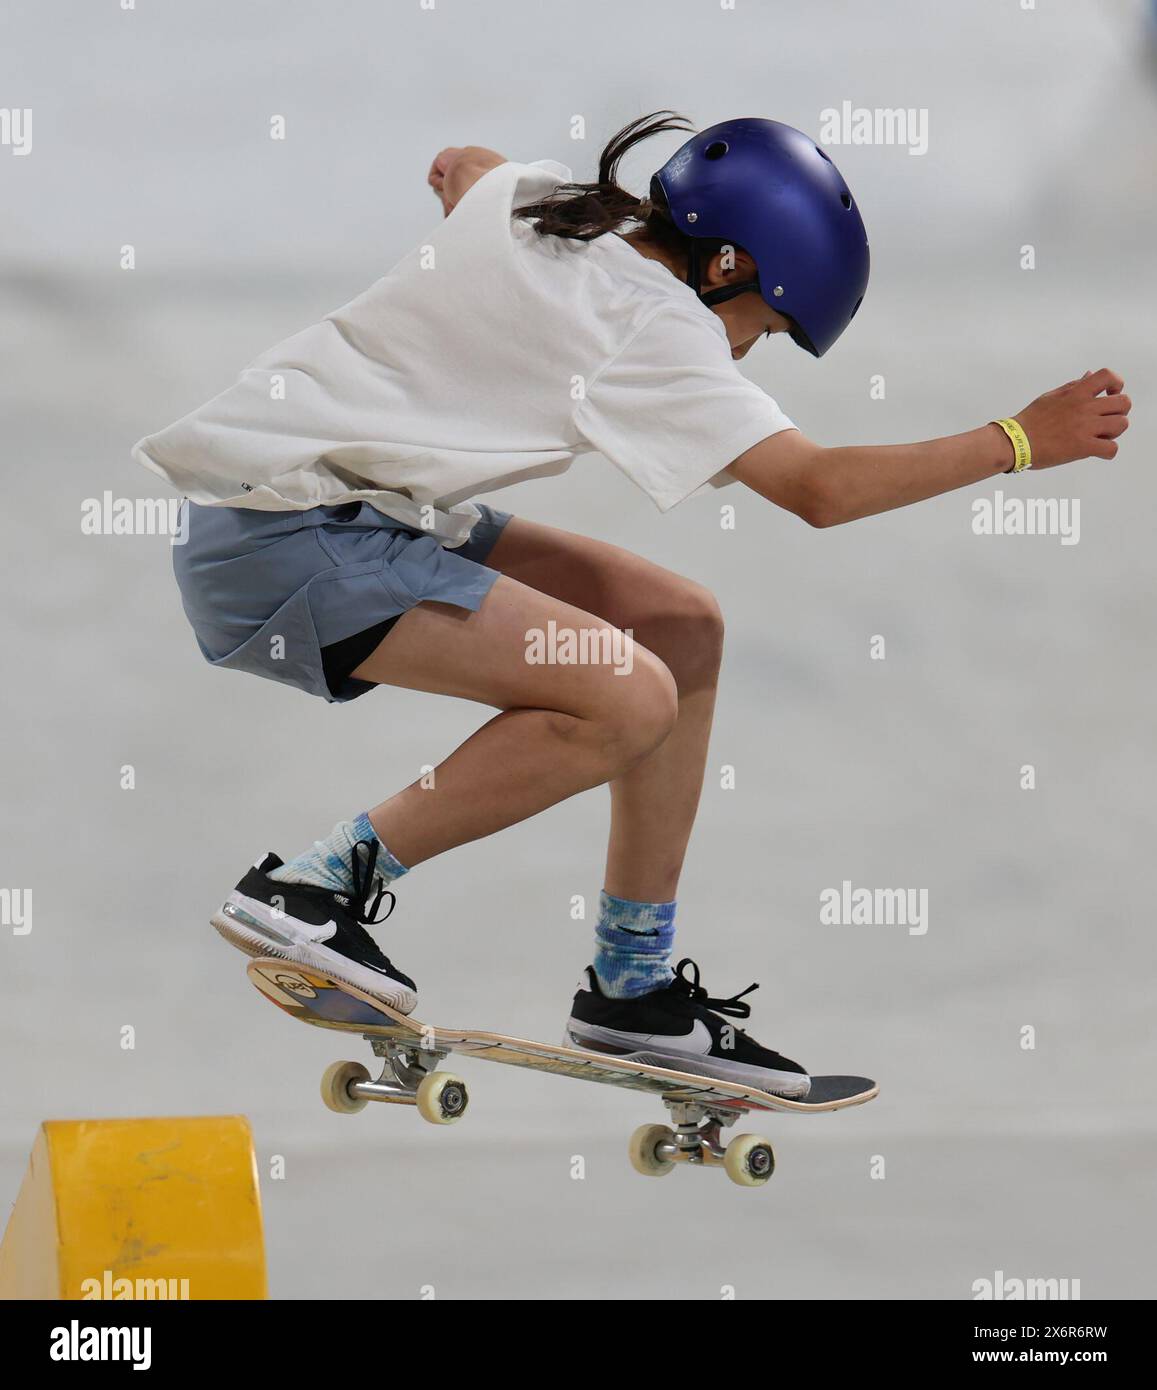 Shanghai. 16 mai 2024. Le Japonais Onodera Ginwoo participe aux préliminaires masculins de skateboard lors de la série olympique qualificative de Shanghai à Shanghai, dans l'est de la Chine, le 16 mai 2024. Crédit : Wang Kaiyan/Xinhua/Alamy Live News Banque D'Images